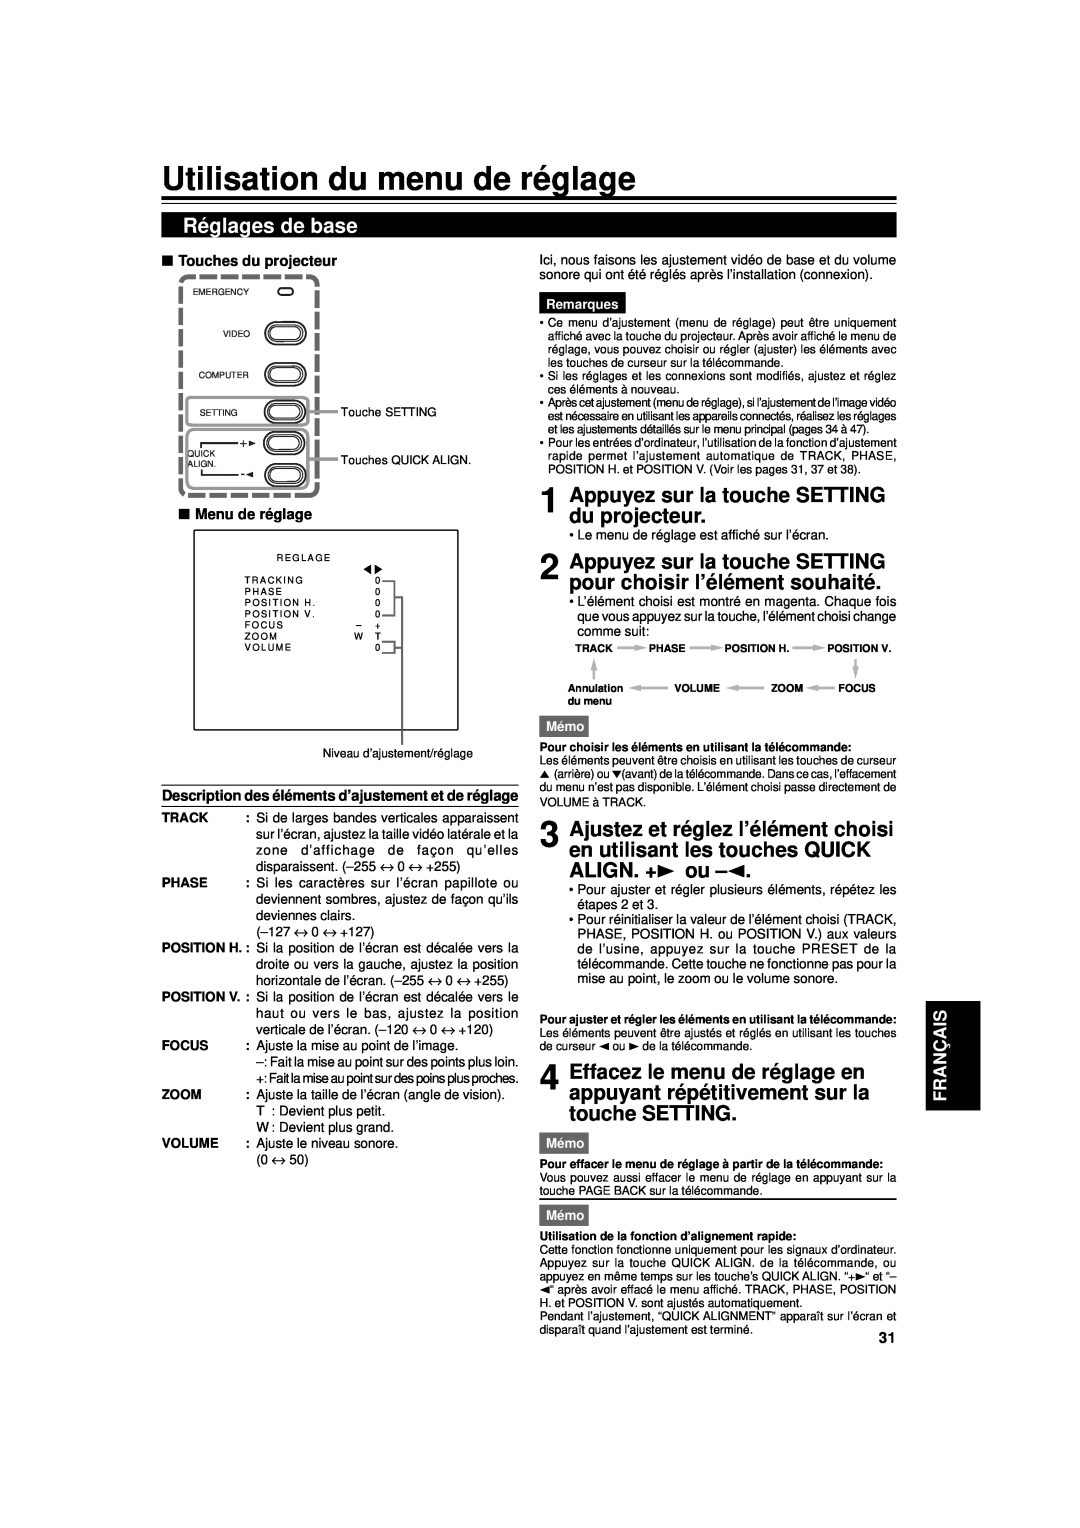 JVC DLA-G11U manual Utilisation du menu de réglage, Réglages de base, Appuyez sur la touche SETTING du projecteur 